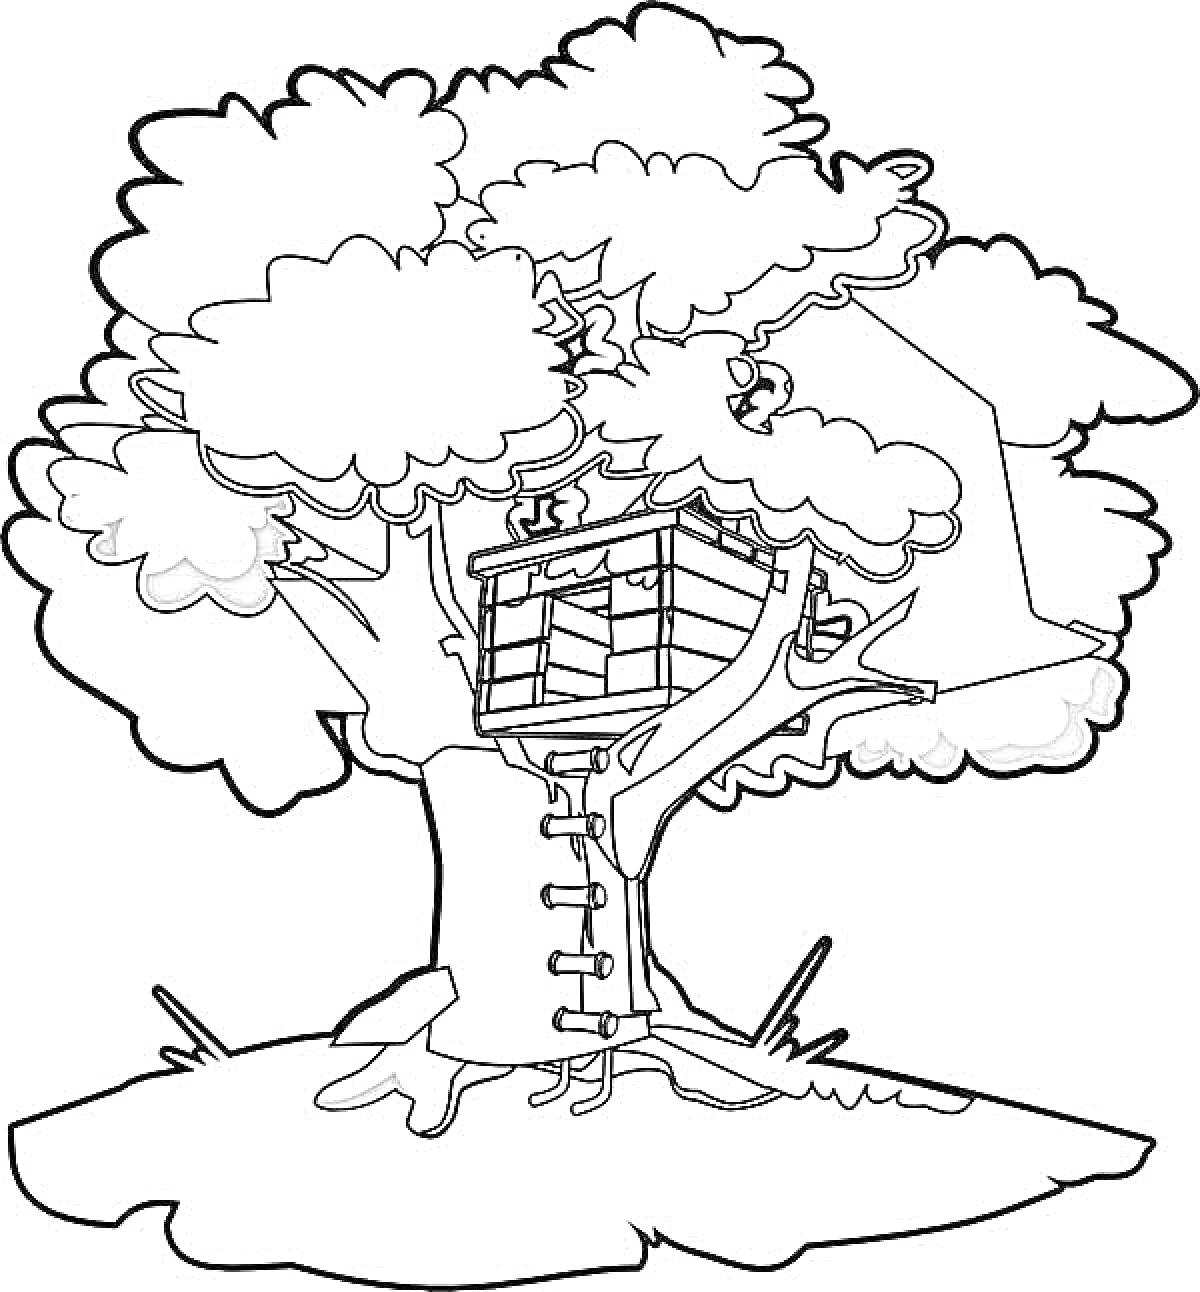 Раскраска Домик на дереве с лестницей, дерево с листвой